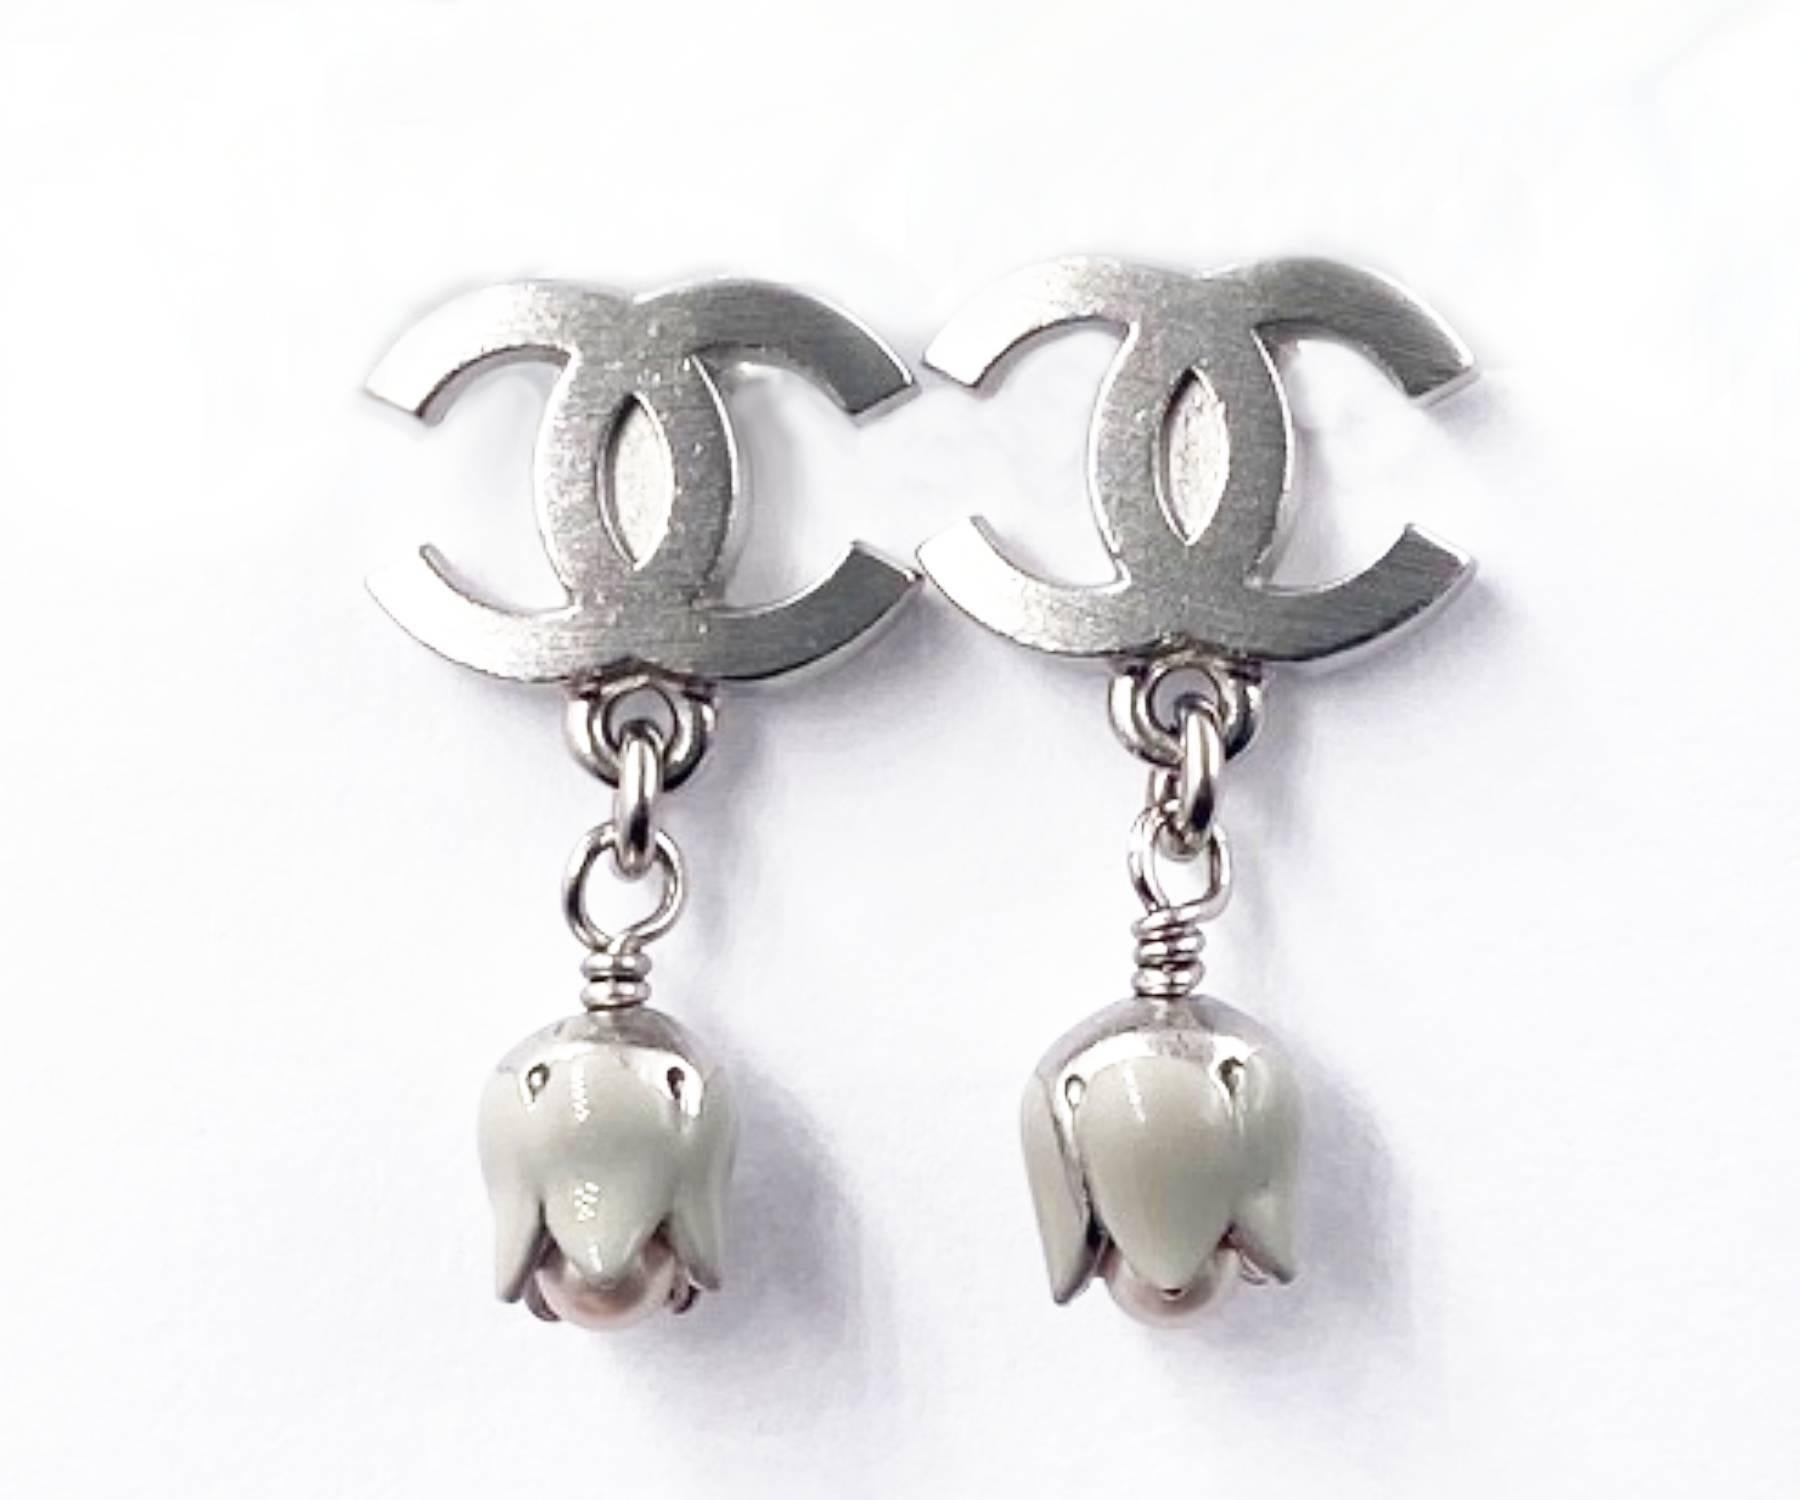 CChanel Silber CC Tulpe baumeln Piercing Ohrringe

* Markiert 05
* Hergestellt in Frankreich

-Sie ist etwa 0,75″ x 0,4″ groß.
-schön und klassisch
-Es ist in einem sehr guten Zustand.

AB3005-00609

